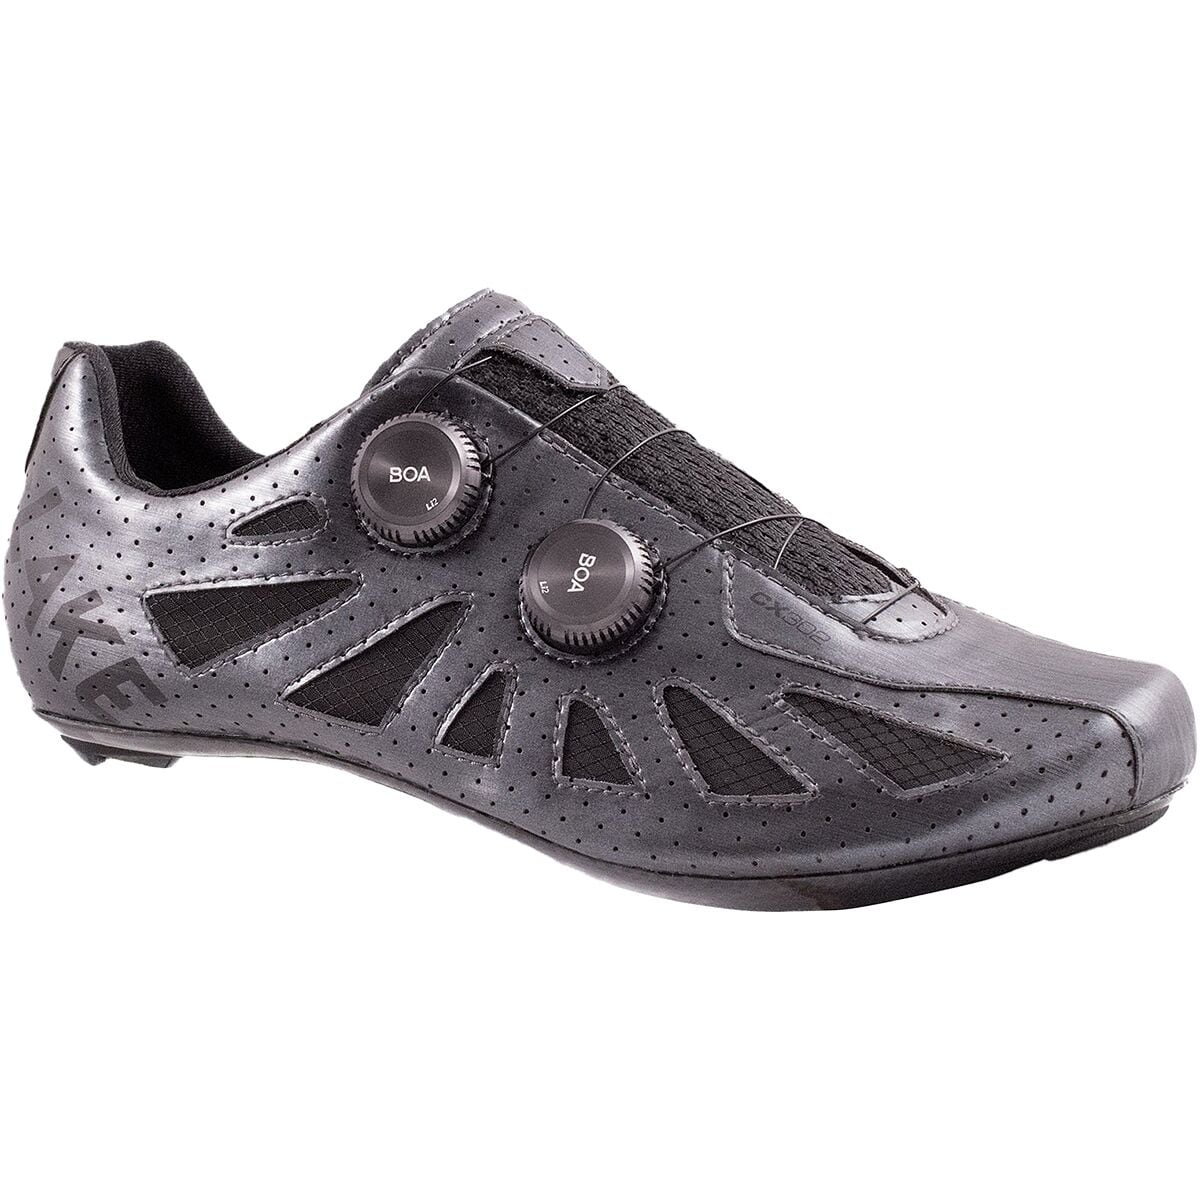 Lake CX302 Extra Wide Cycling Shoe - Men's Metal/Black, 45.5